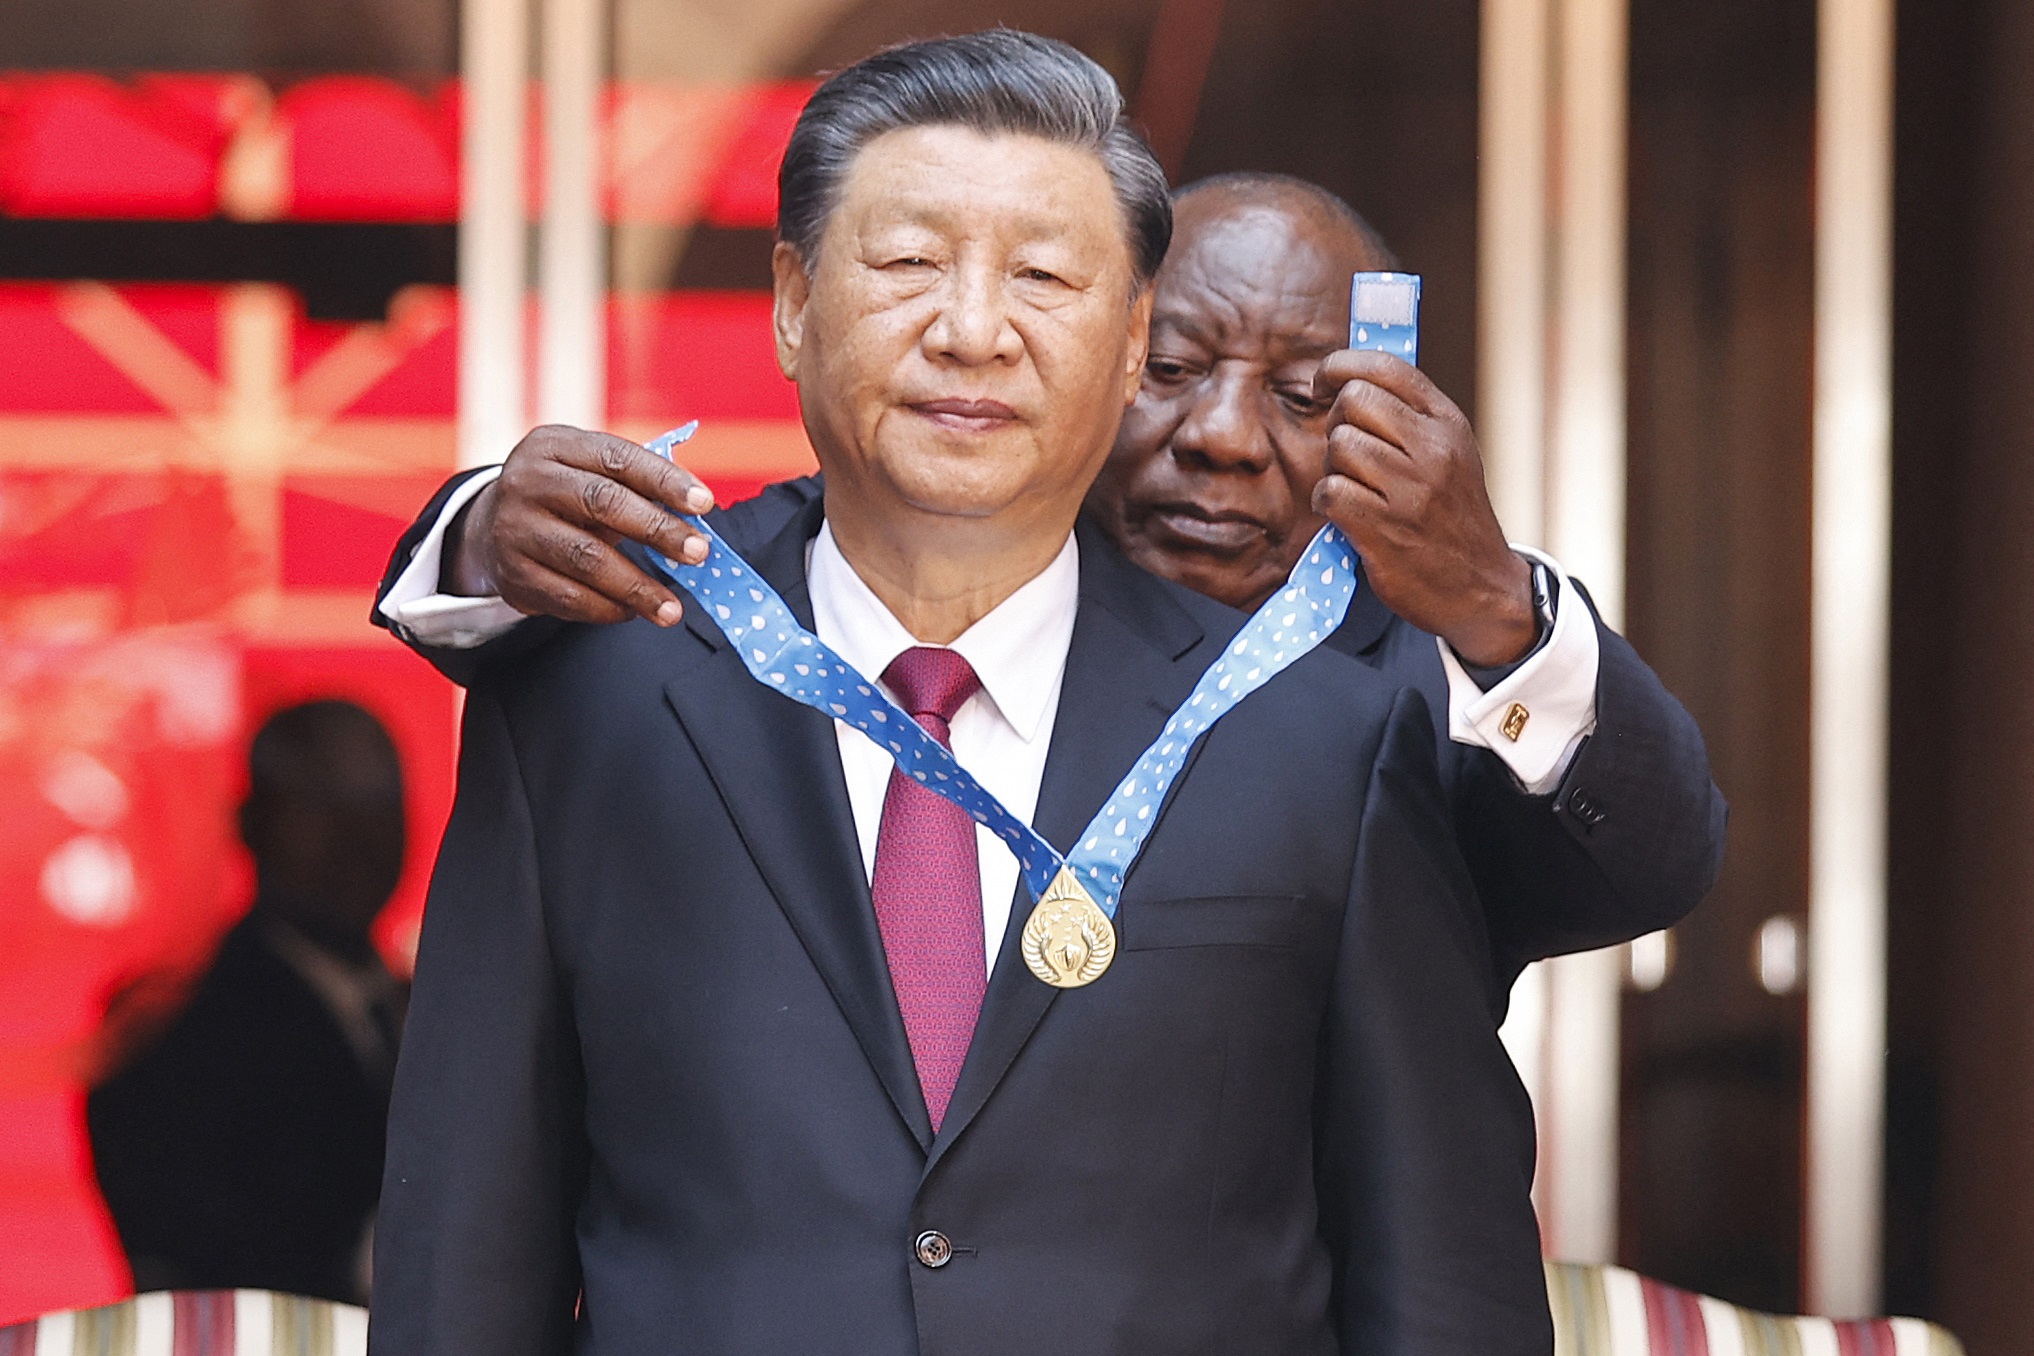 El presidente chino, Xi Jinping, recibe una condecoración de su par sudafricano Cyril Ramaphosa. China se ha extendido ampliamente en el continente africano. (Foto Prensa Libre: AFP)